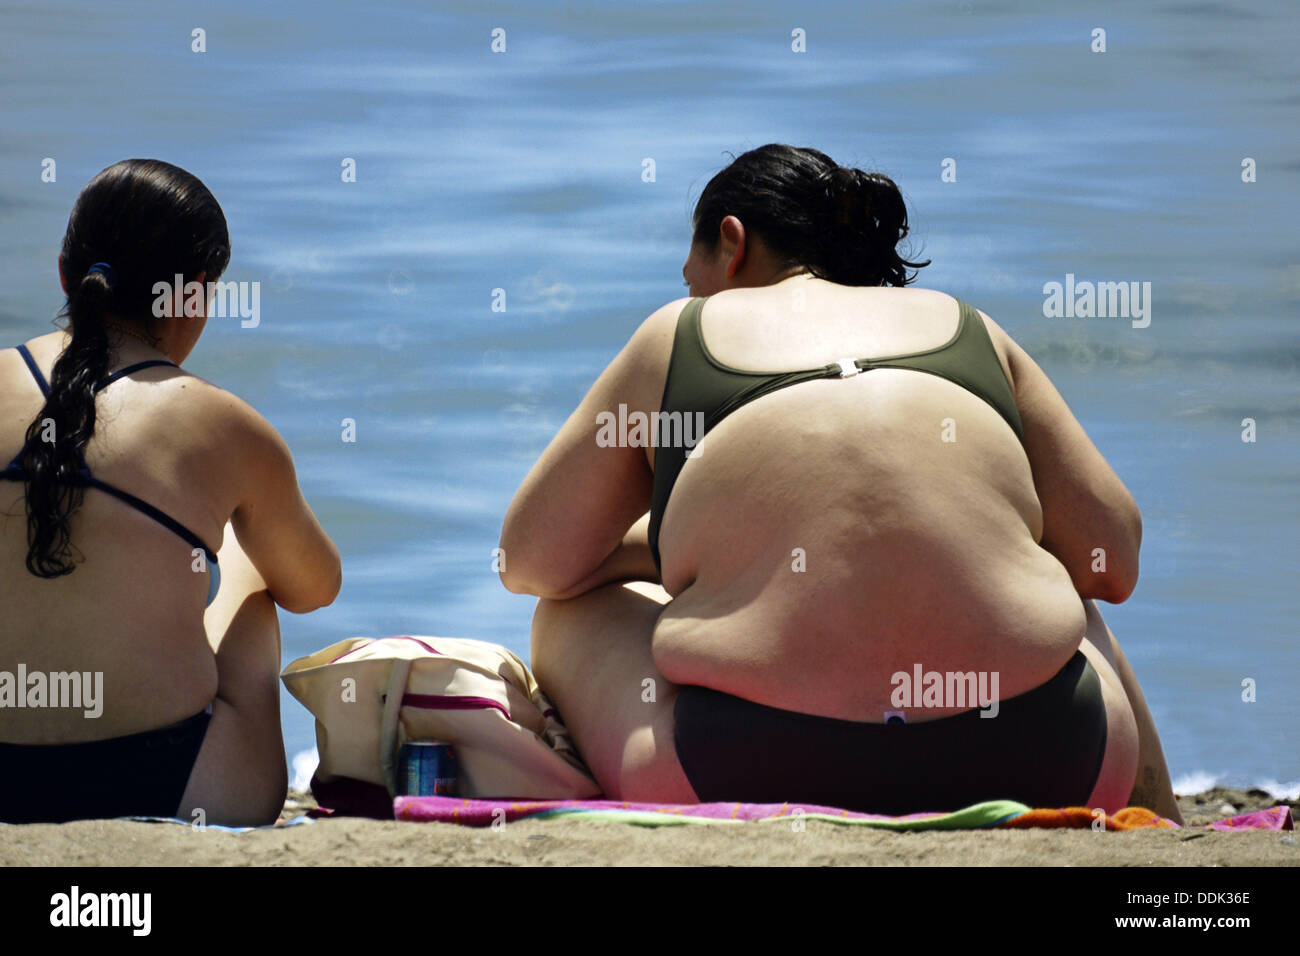 Oceano Interesante colchón obese girl bikini identificación papa autoridad